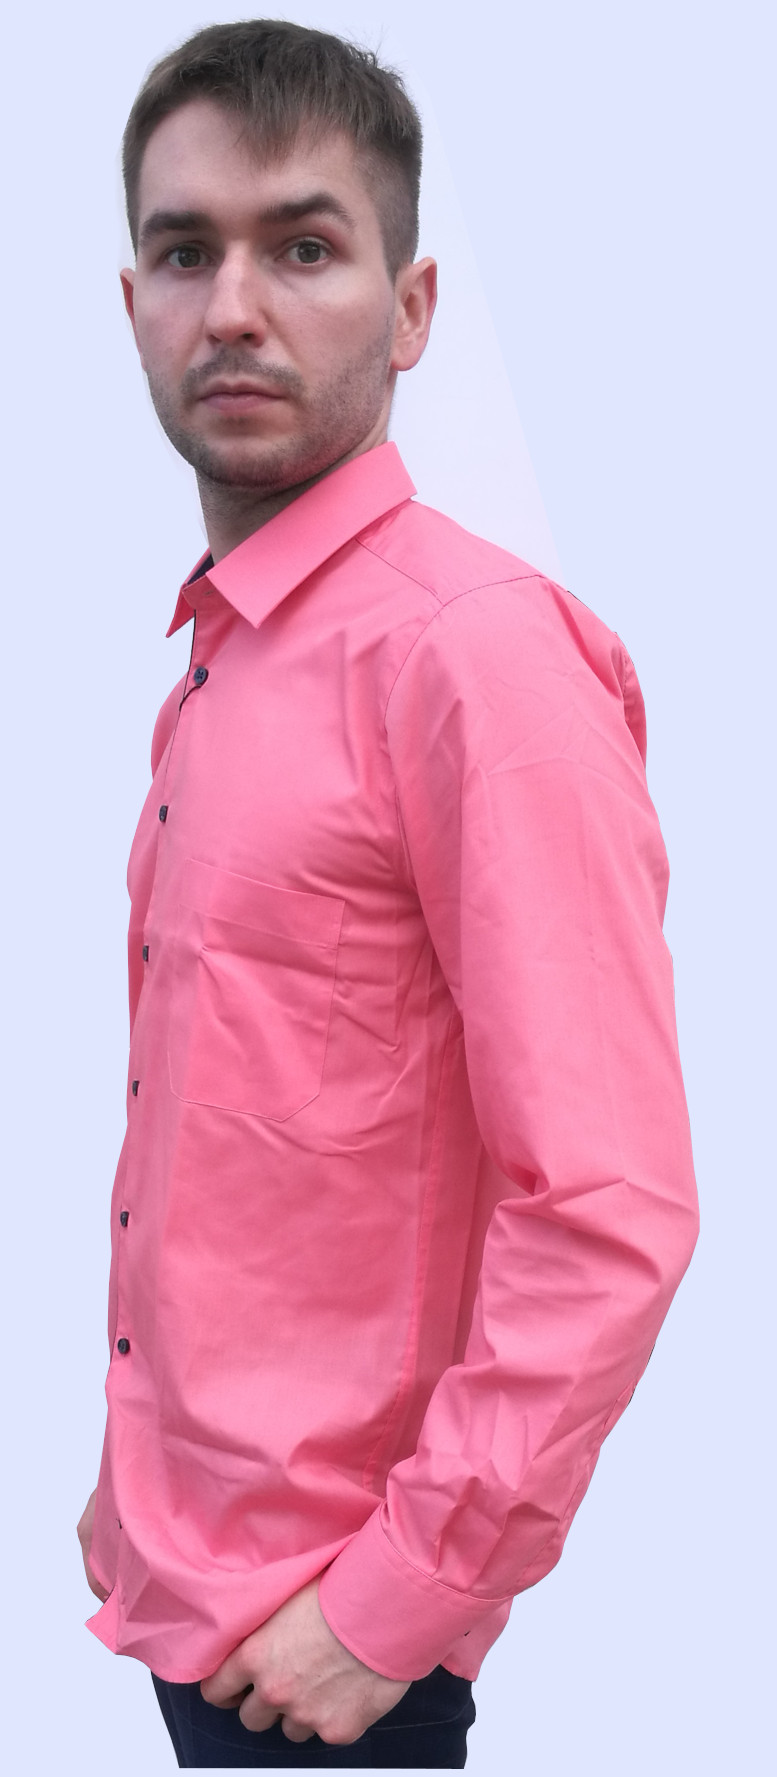 Widok z boku różowej koszuli